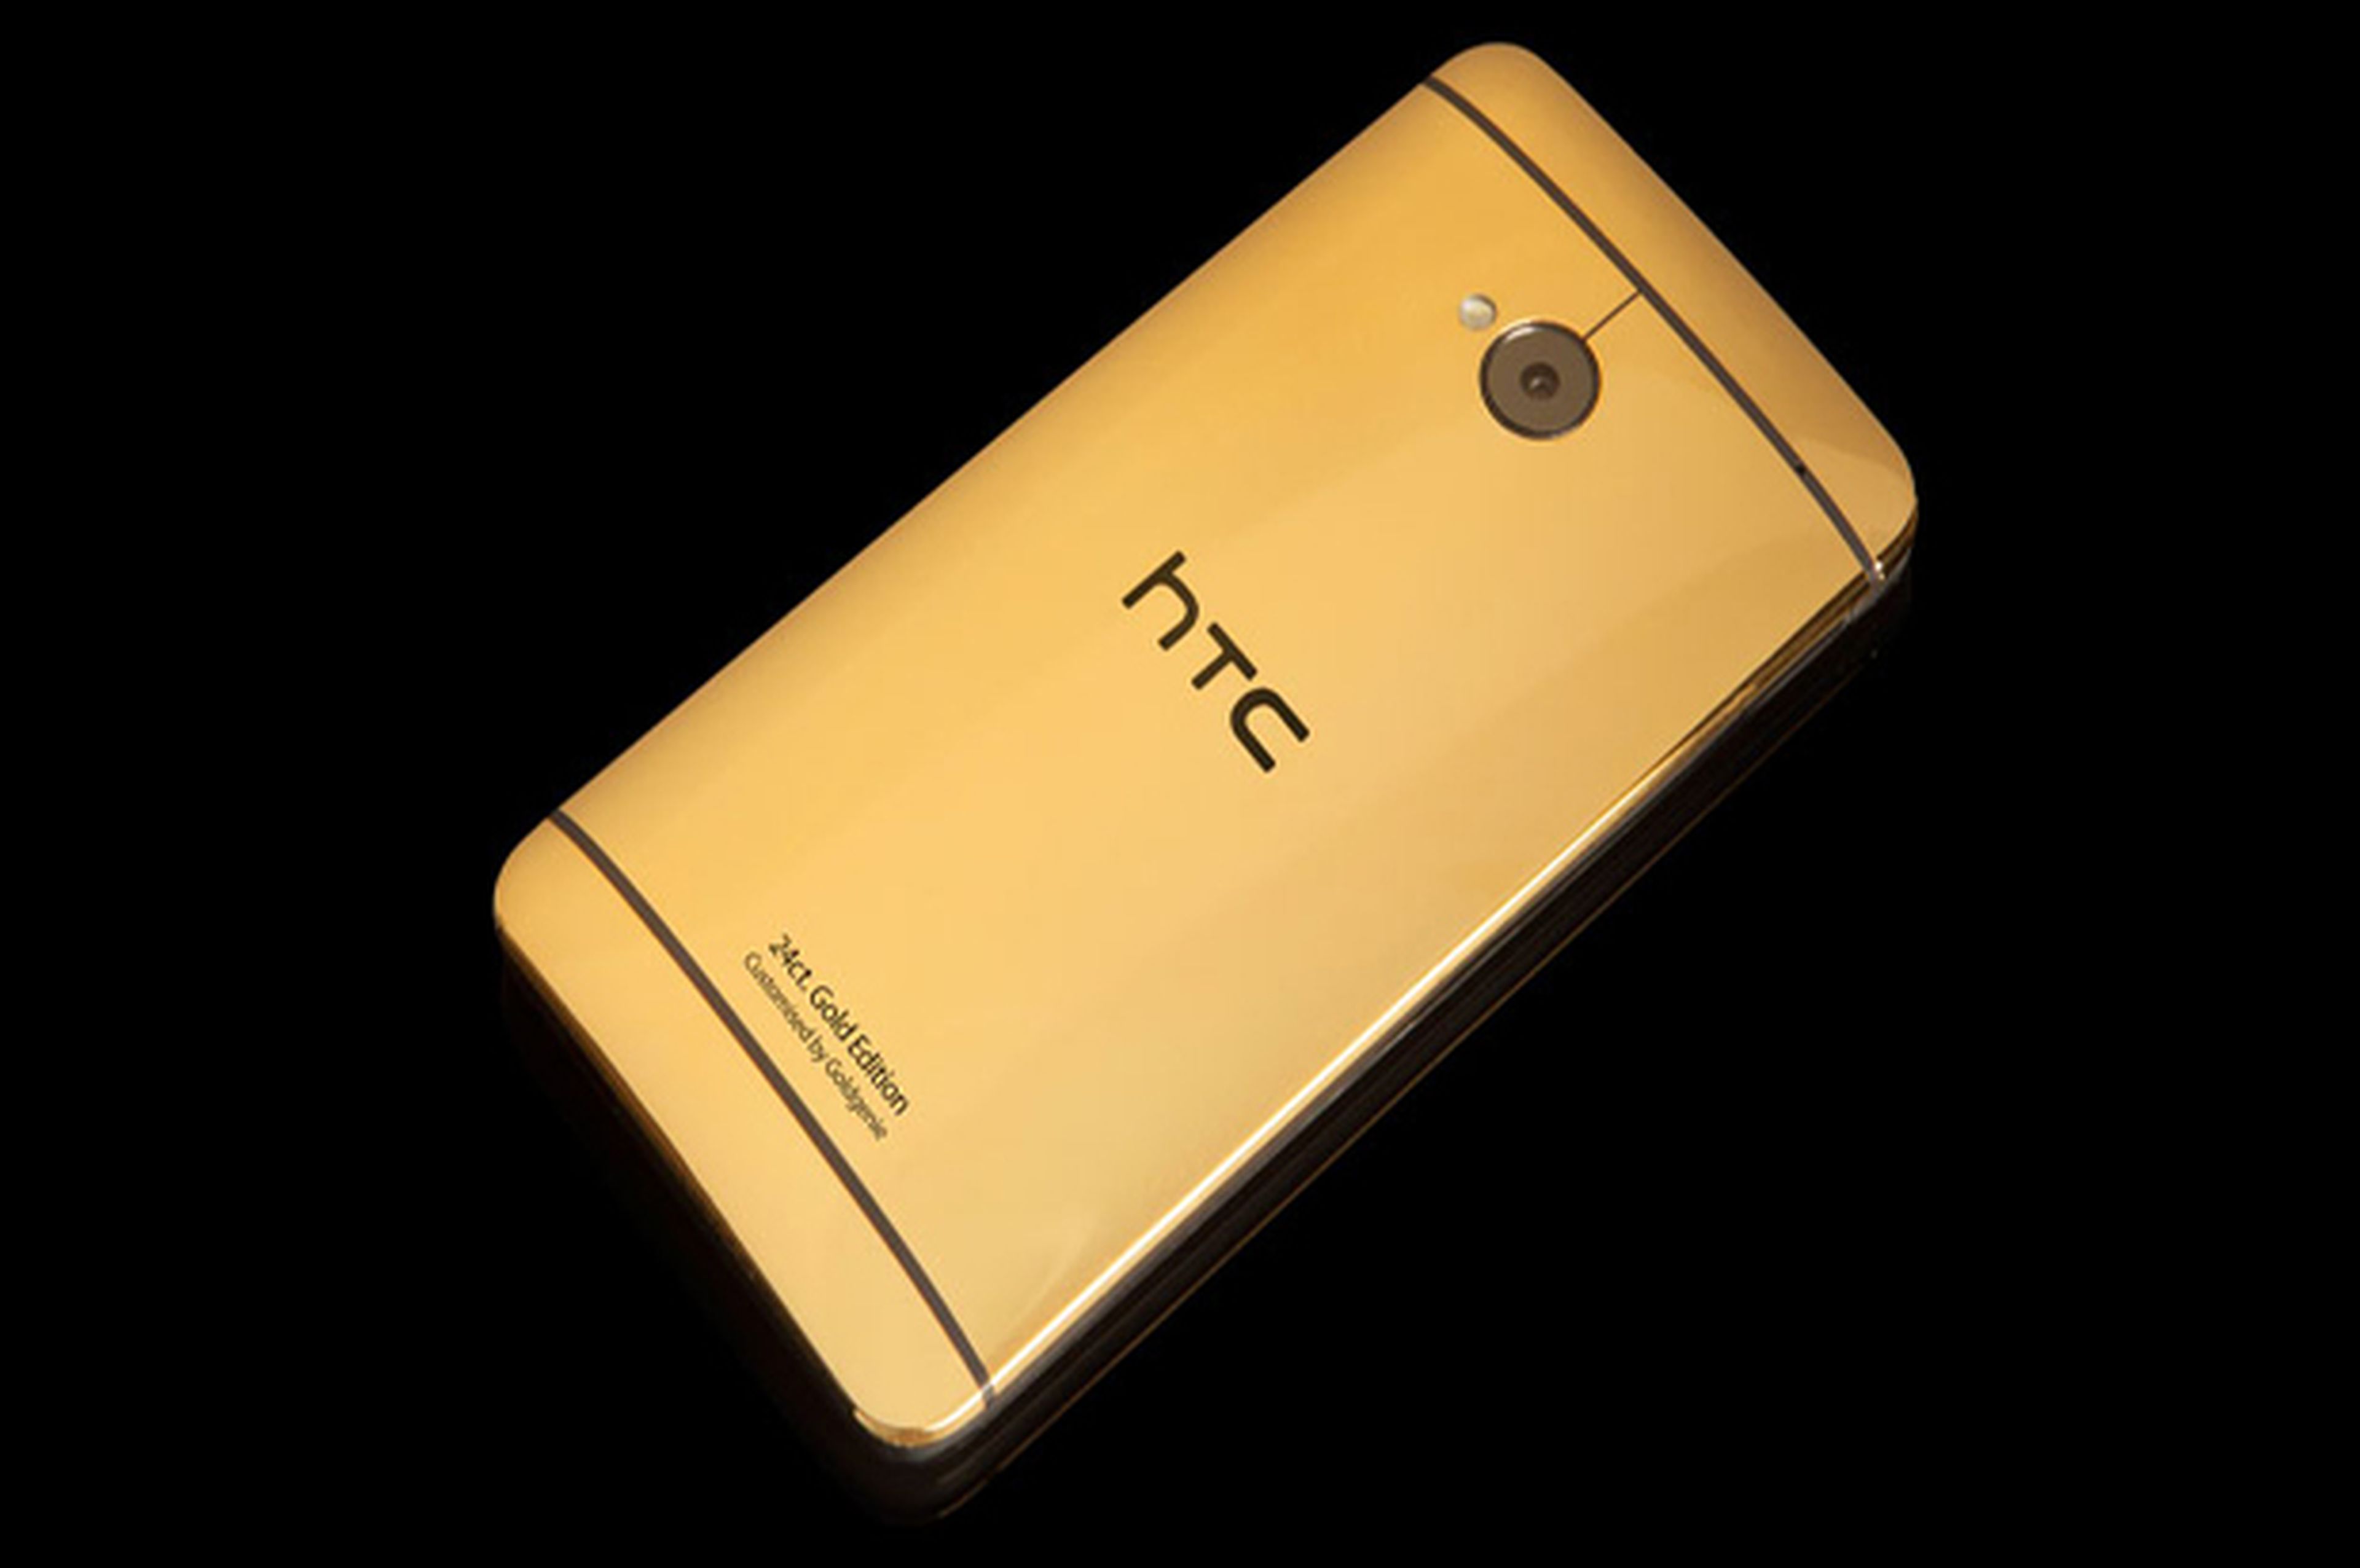 HTC One chapado en oro, oficial a un precio de 2.300 euros